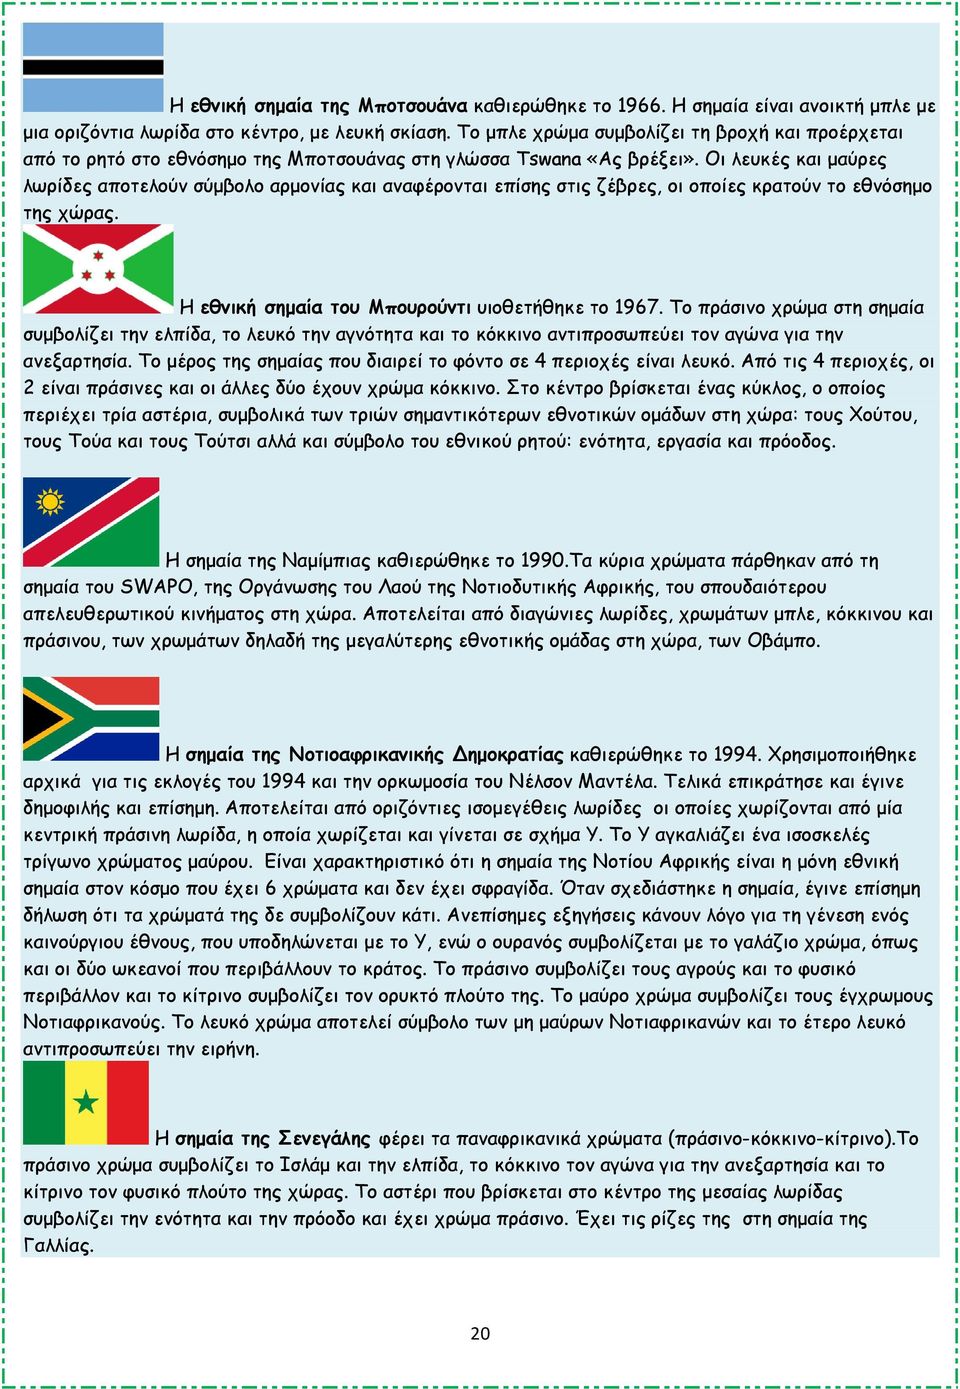 Οι λευκές και µαύρες λωρίδες αποτελούν σύµβολο αρµονίας και αναφέρονται επίσης στις ζέβρες, οι οποίες κρατούν το εθνόσηµο της χώρας. Η εθνική σηµαία του Μπουρούντι υιοθετήθηκε το 1967.